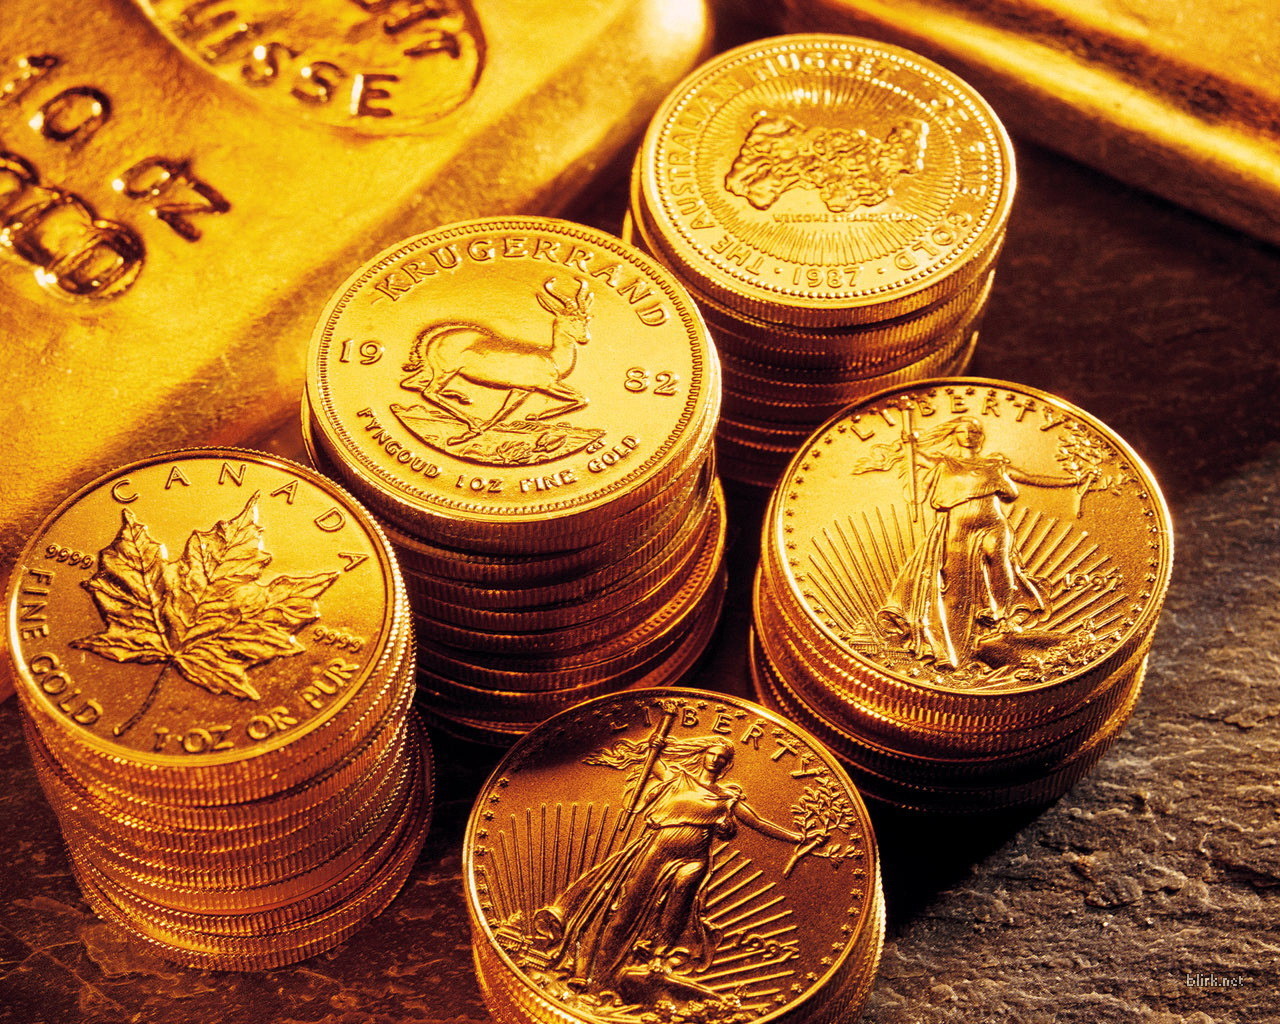 Chênh lệch giữa giá vàng thế giới và giá vàng trong nước hôm nay đang ở mức 400.000 đồng/lượng